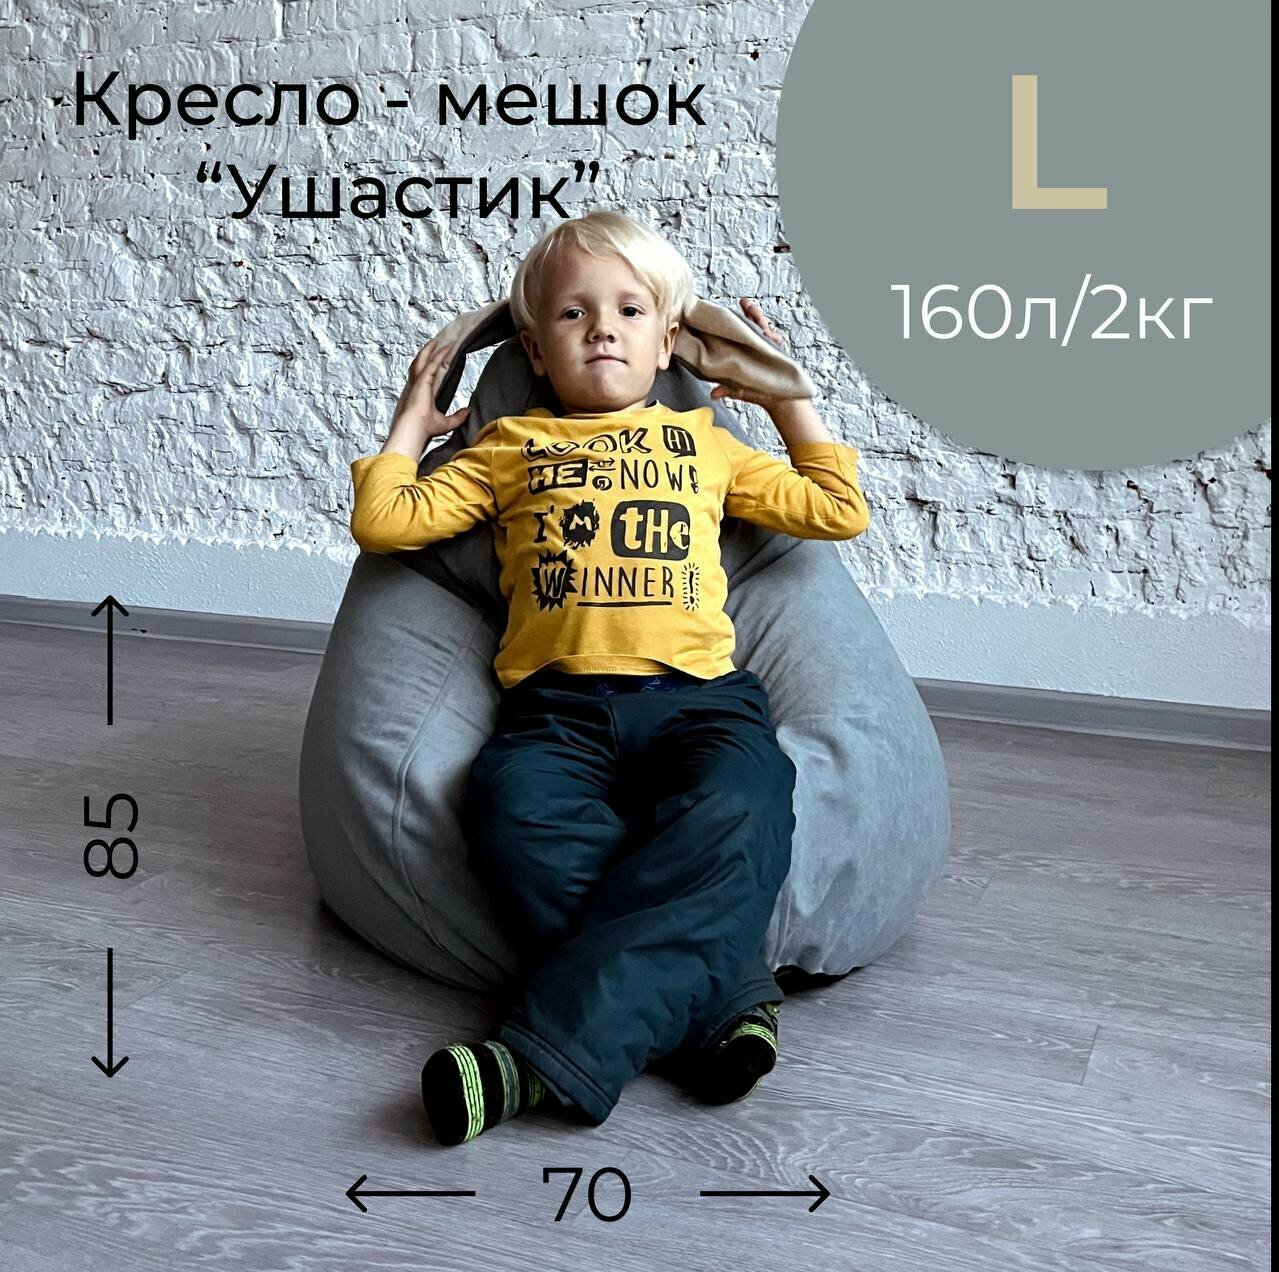 Мягкое кресло мешок для детей велюр АртБинБэг "Ушастик" светло-серый с бежевыми ушами, размер L